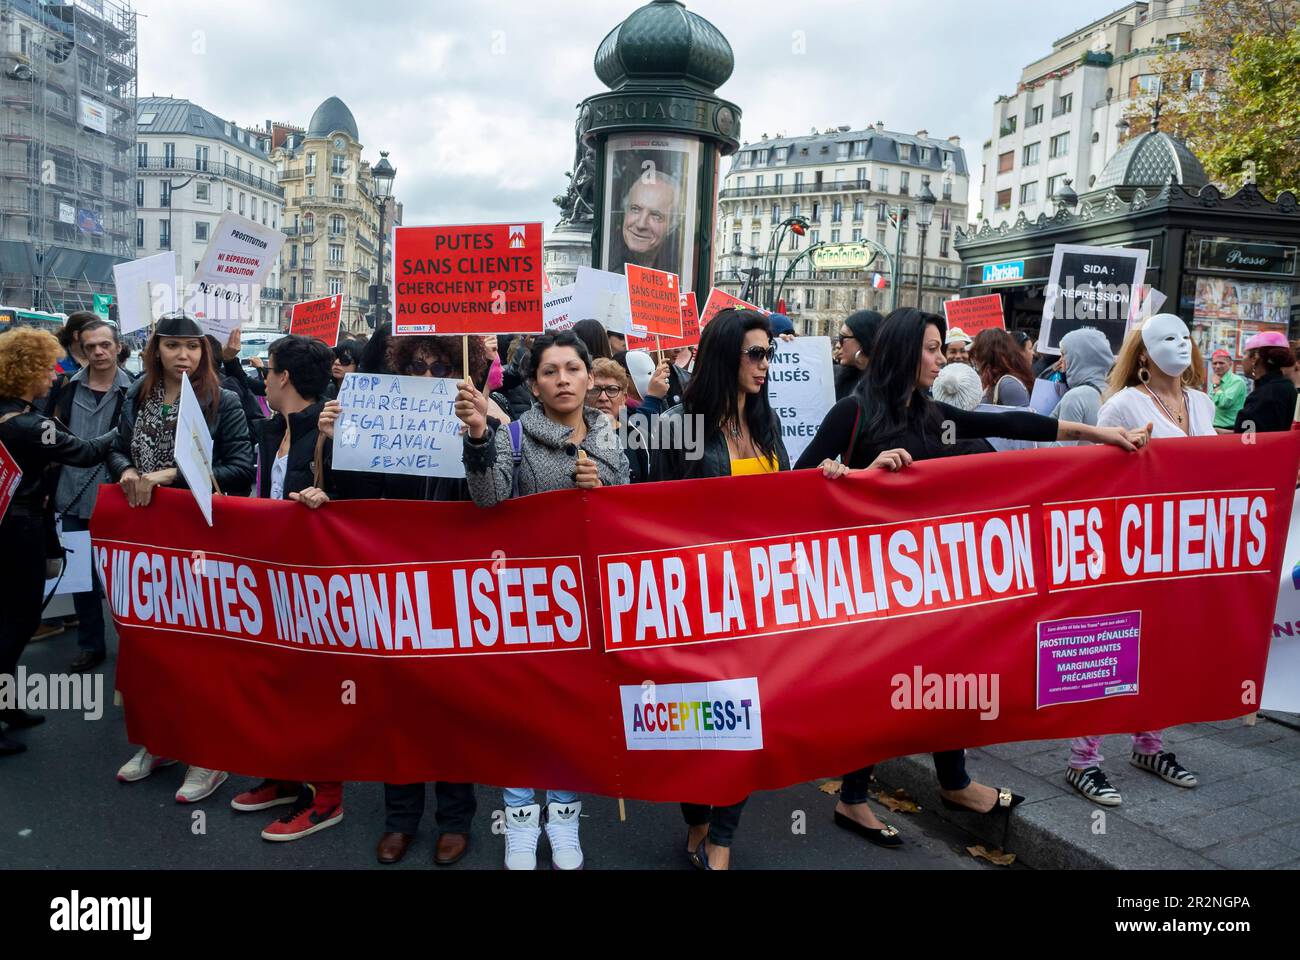 Paris, France, Groupe, Association, Trans genres femmes marchant avec la bannière de protestation, contre la loi pénalisant les clients des prostituées, Acceptess-T, 2013 Banque D'Images